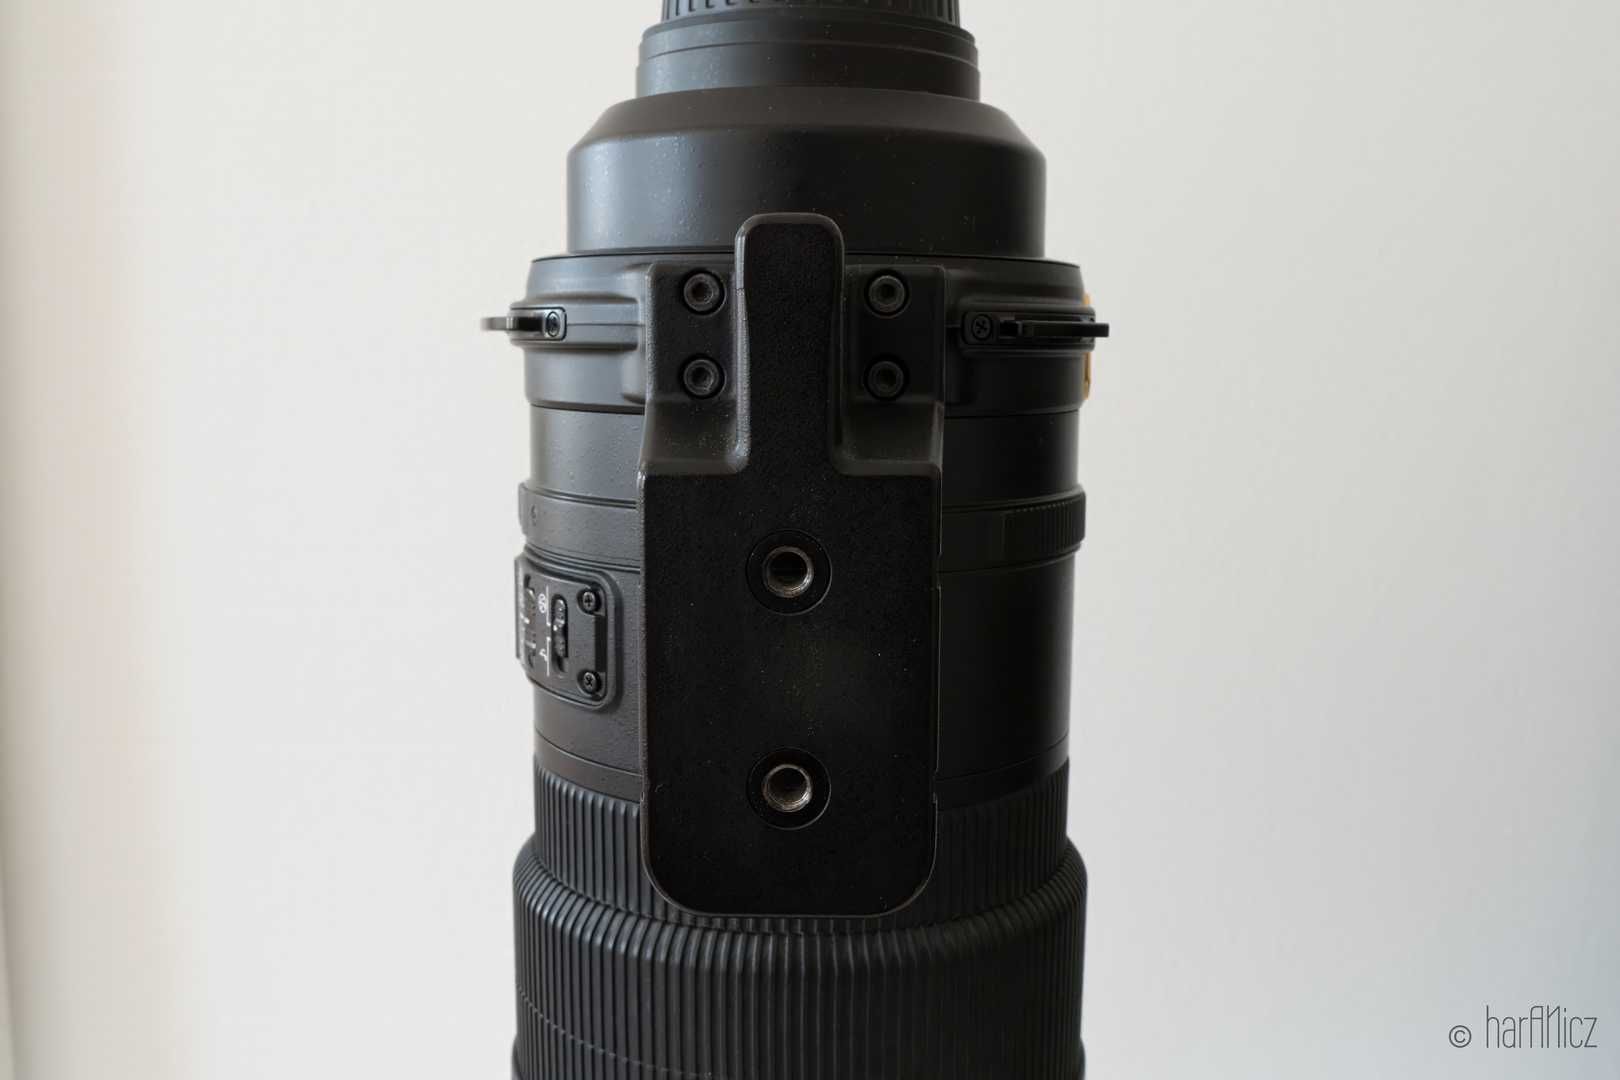 Nikon AF-S NIKKOR 300mm f/2.8G ED VR II